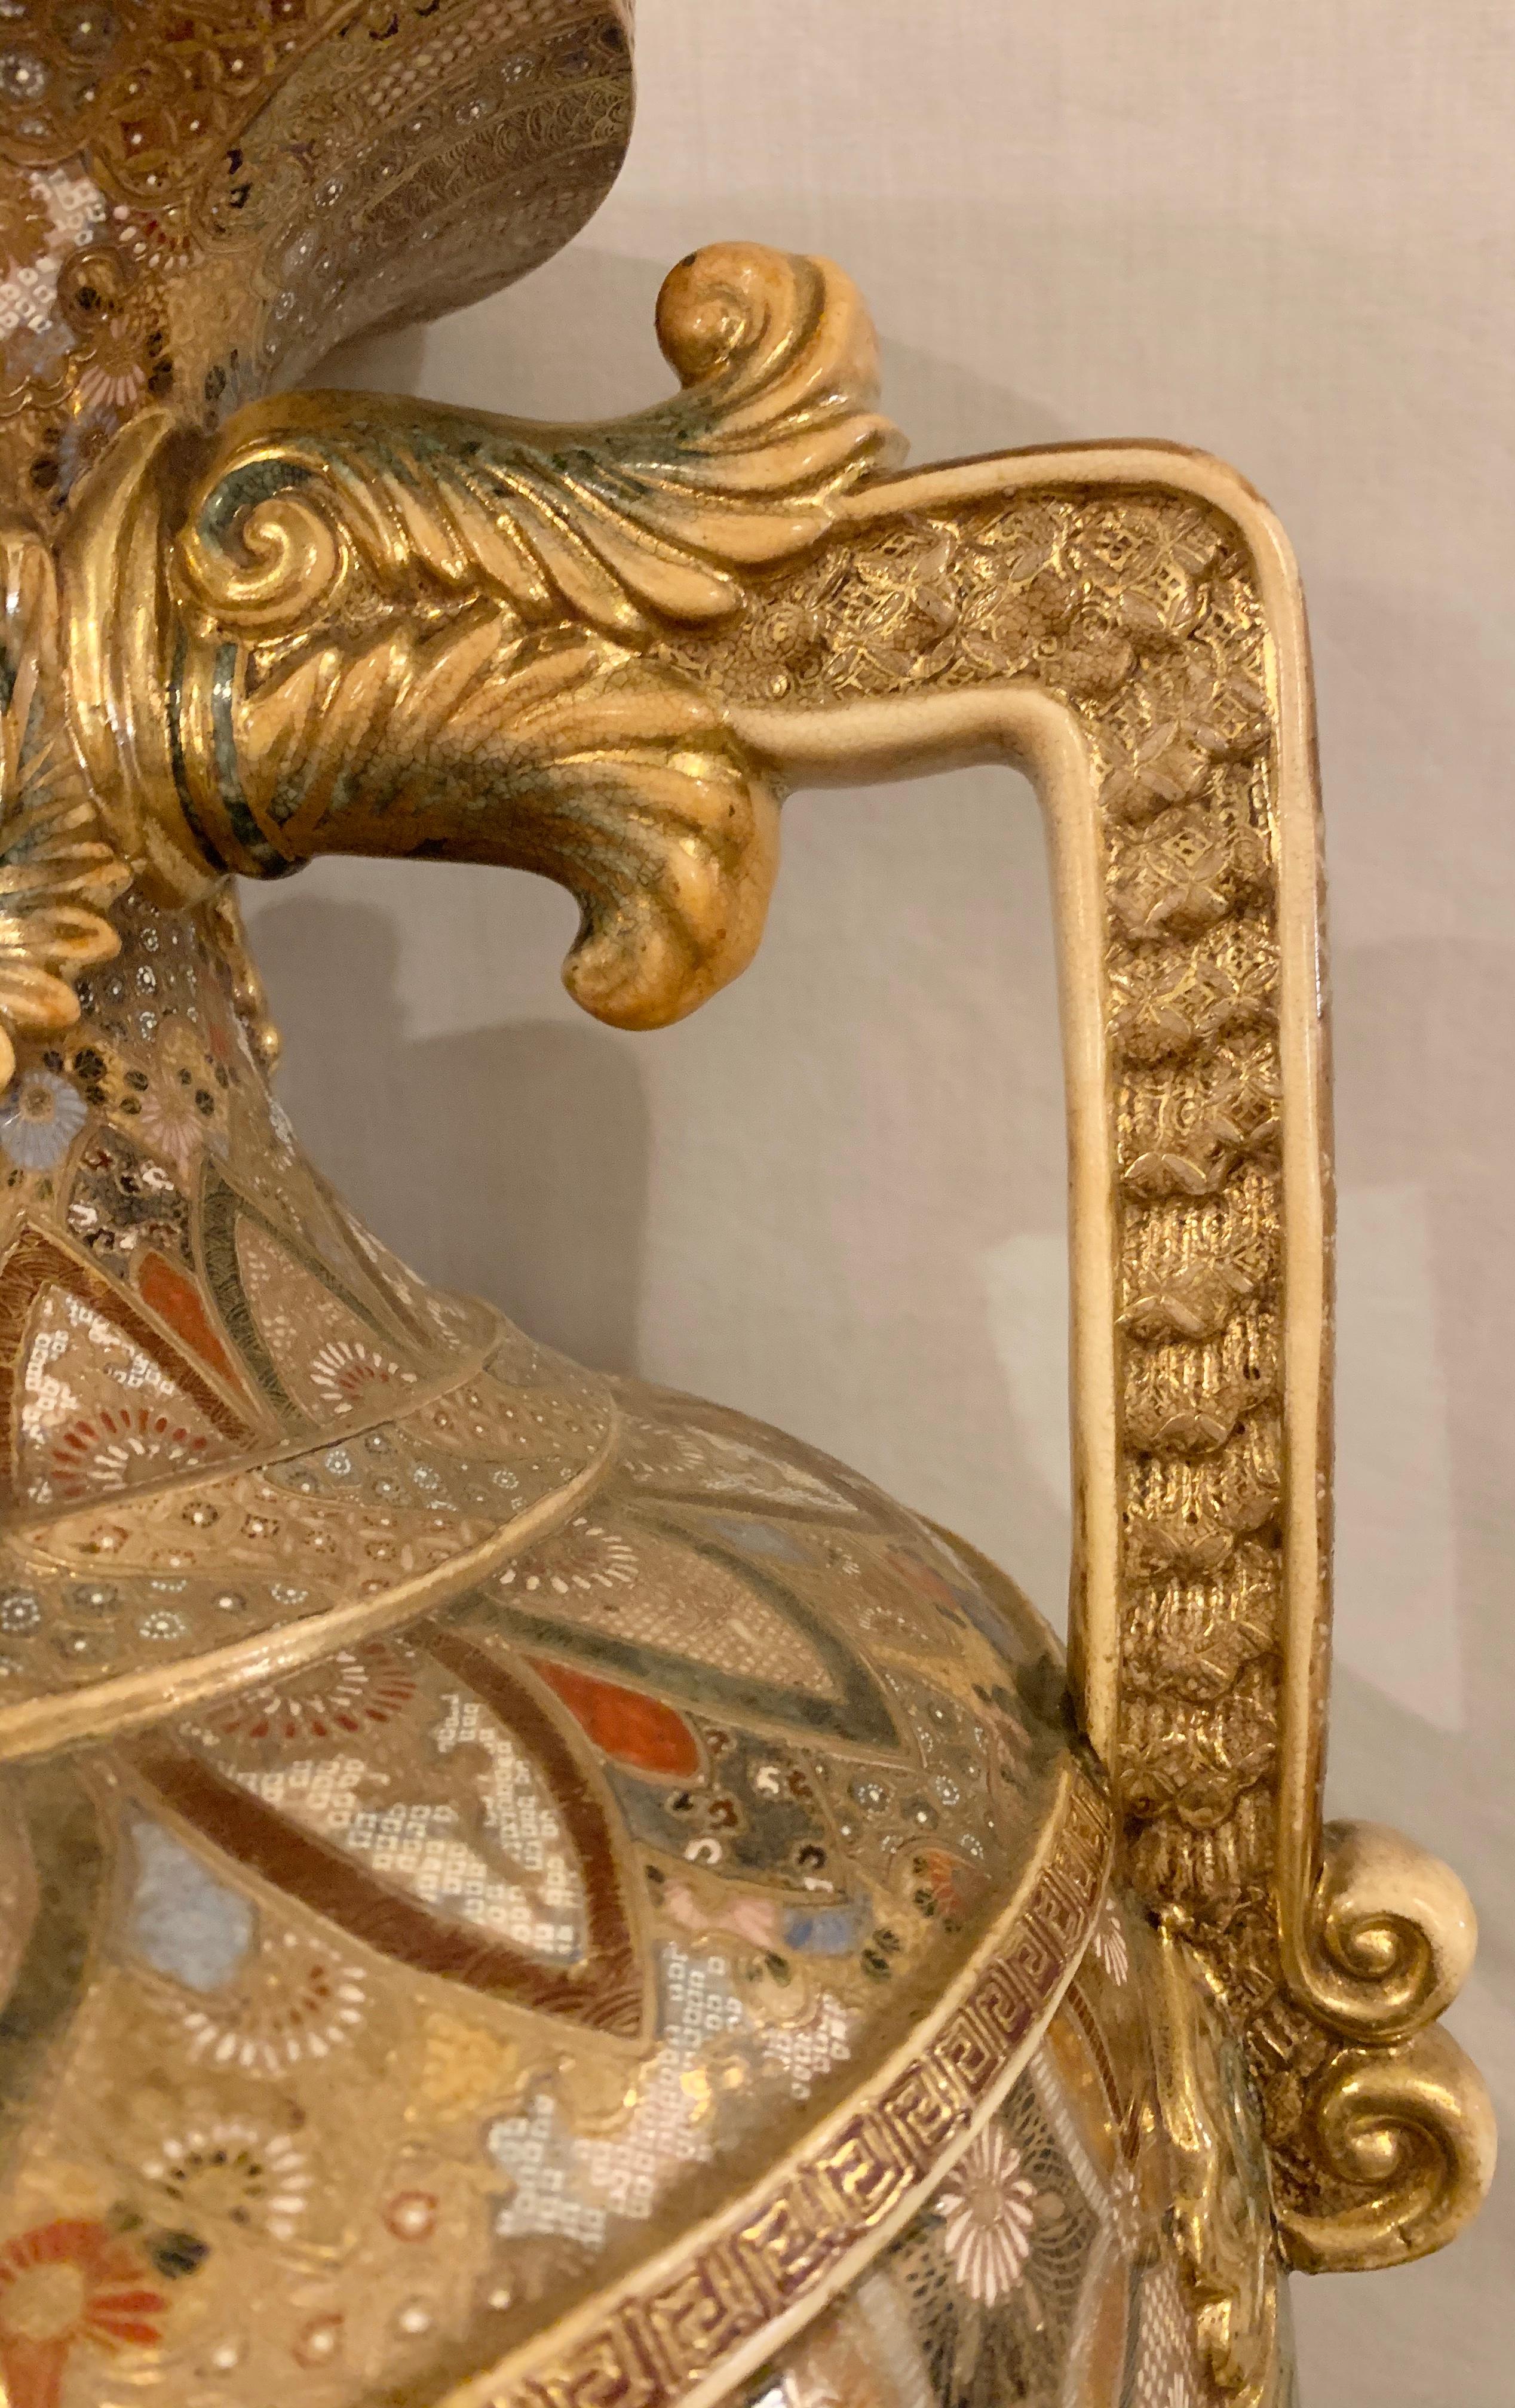 Ceramic Satsuma Thousand Face Vase or Urn Palace Sized Twin Handled